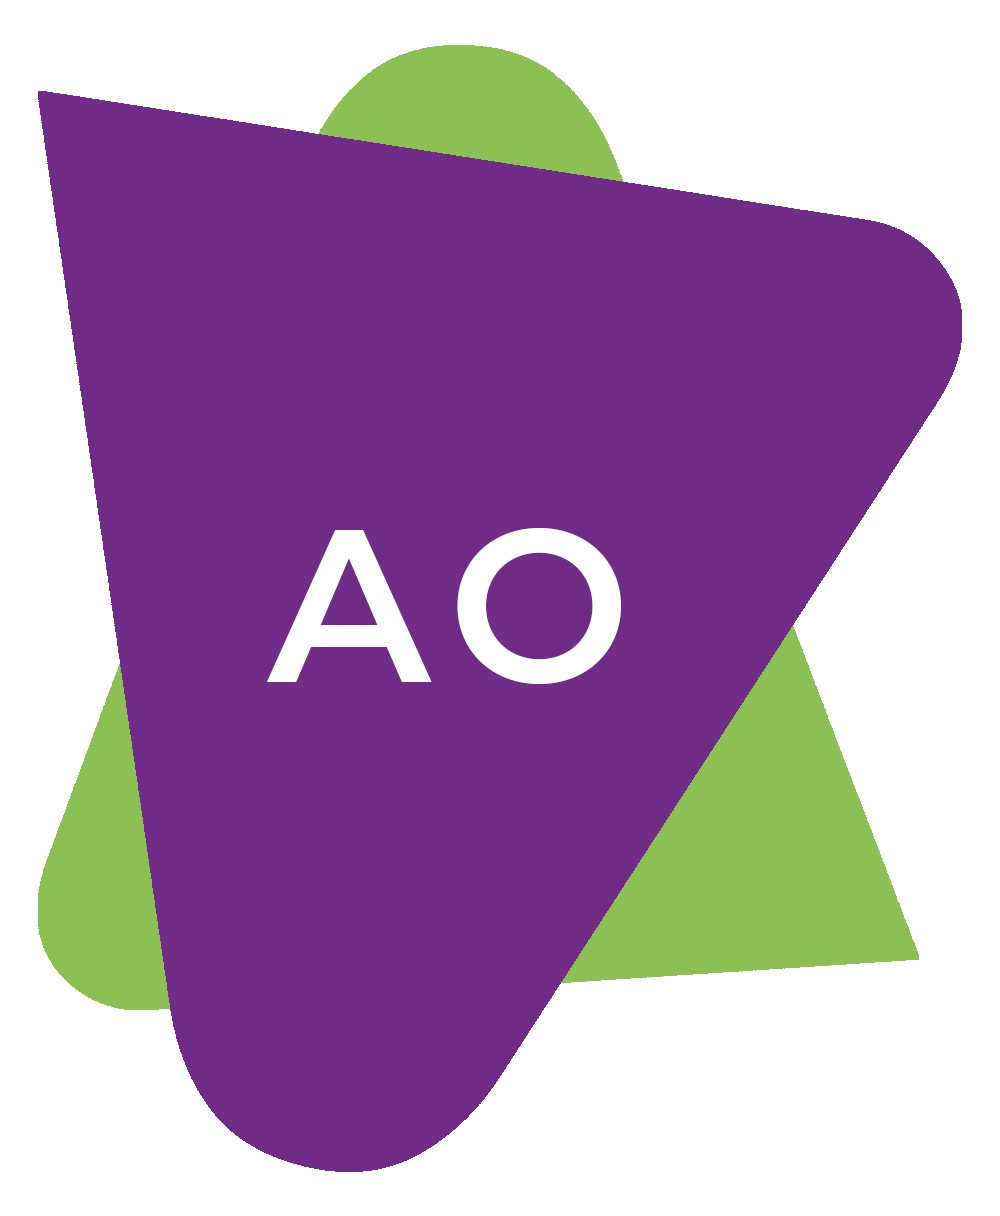 Paarse driehoek met witte letters 'AO' in, daarachter nog een groene driehoek